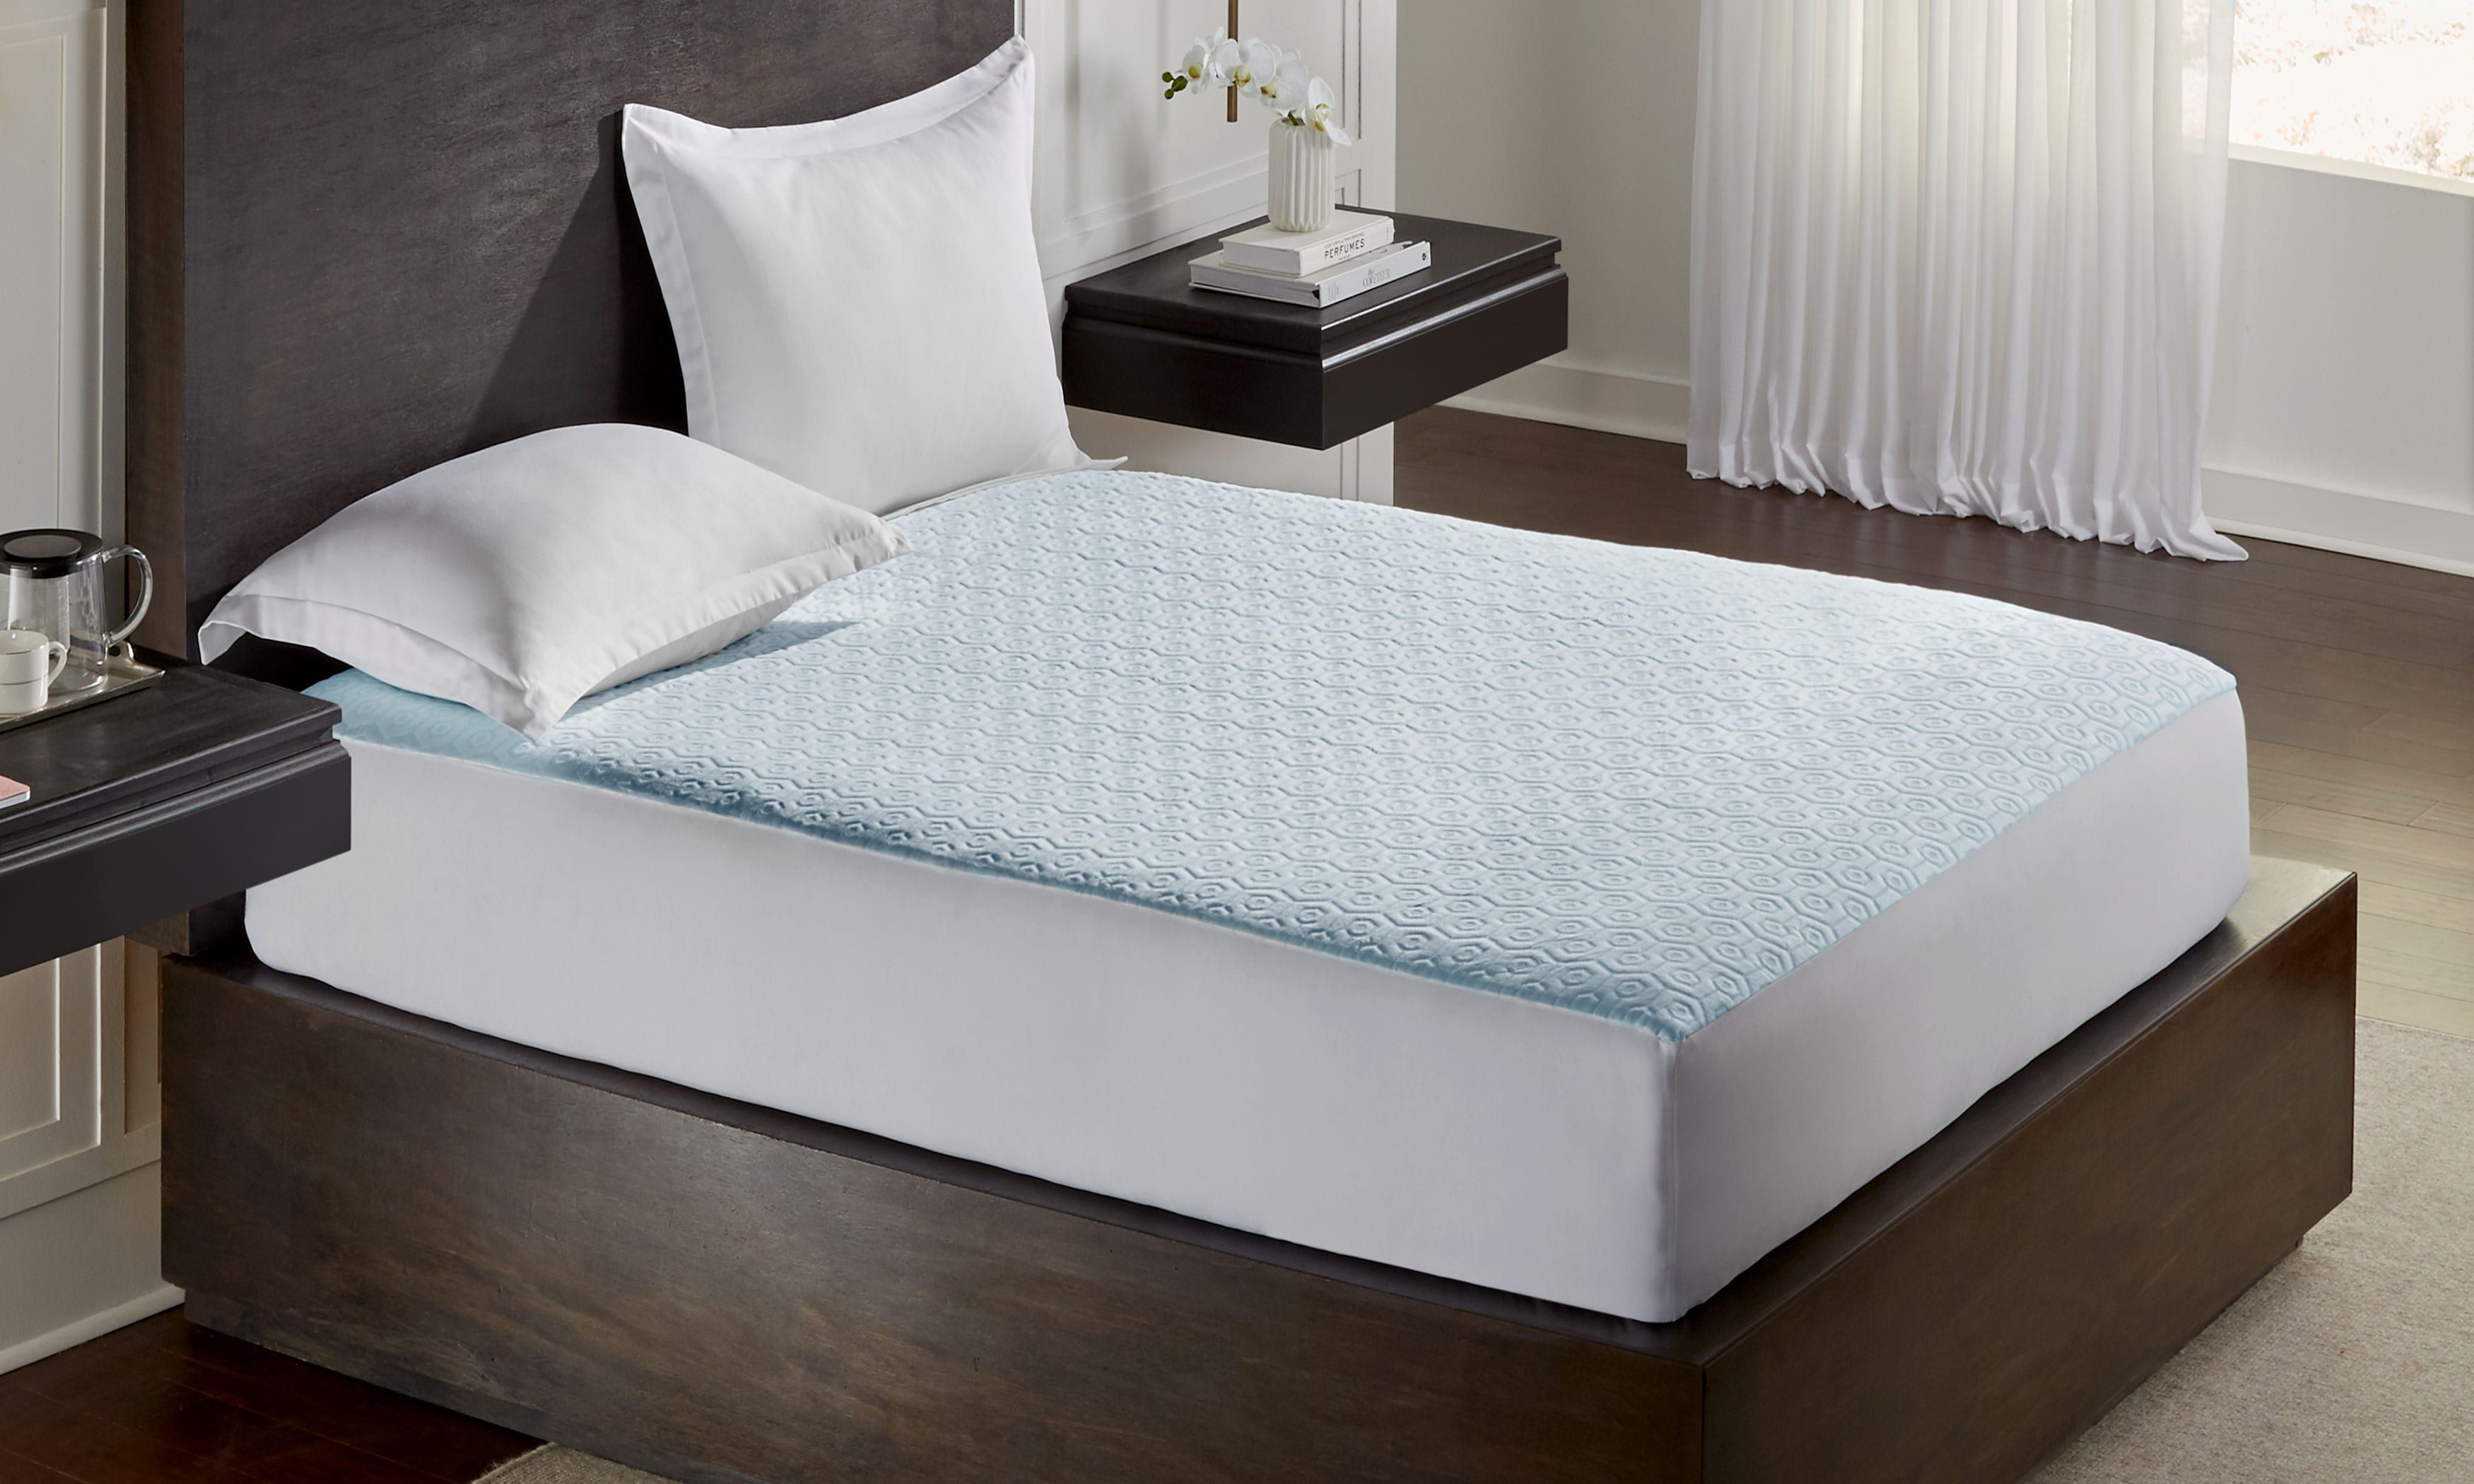 bed foam mattress pad cooling pad